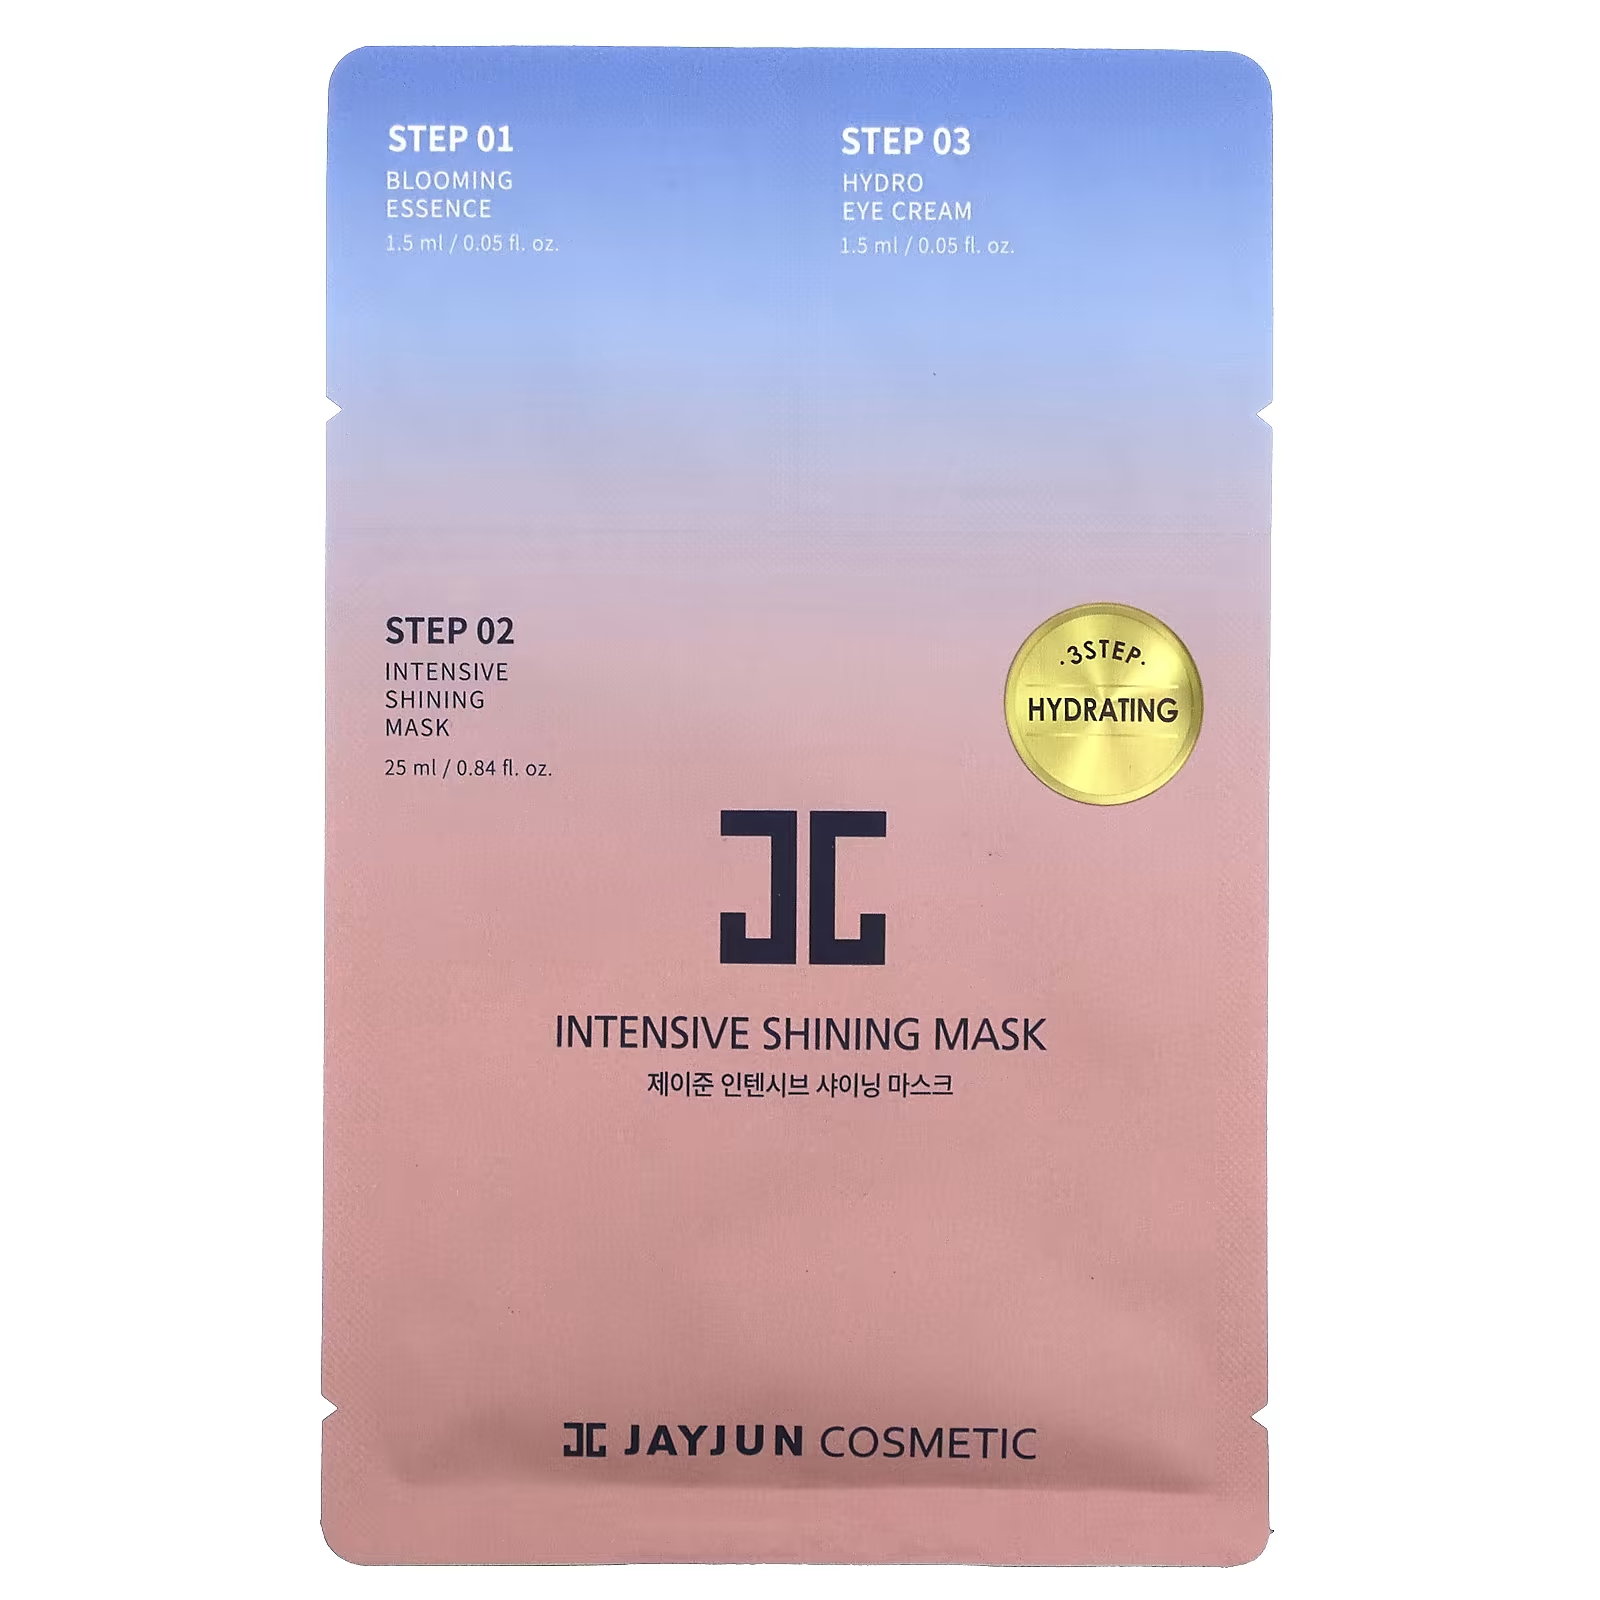 jayjun cosmetic трехфазная увлажняющая маска 1 набор Маска косметическая Jayjun Cosmetic 3-ступенчатая